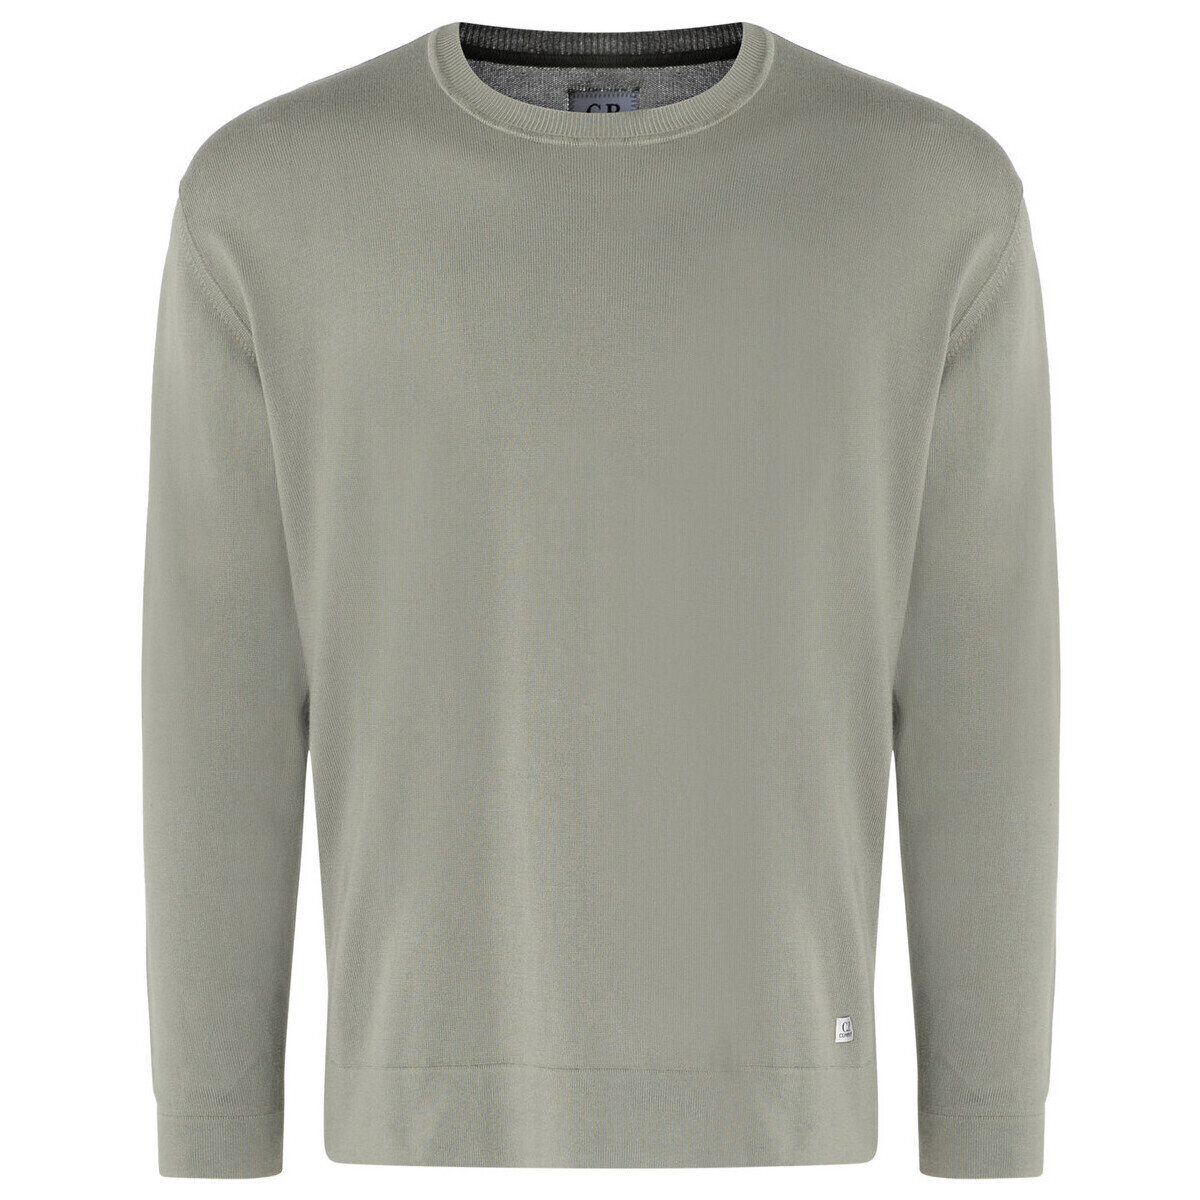 Kleidung Sweatshirts C.p. Company Jersey  aus grüner Baumwolle Other